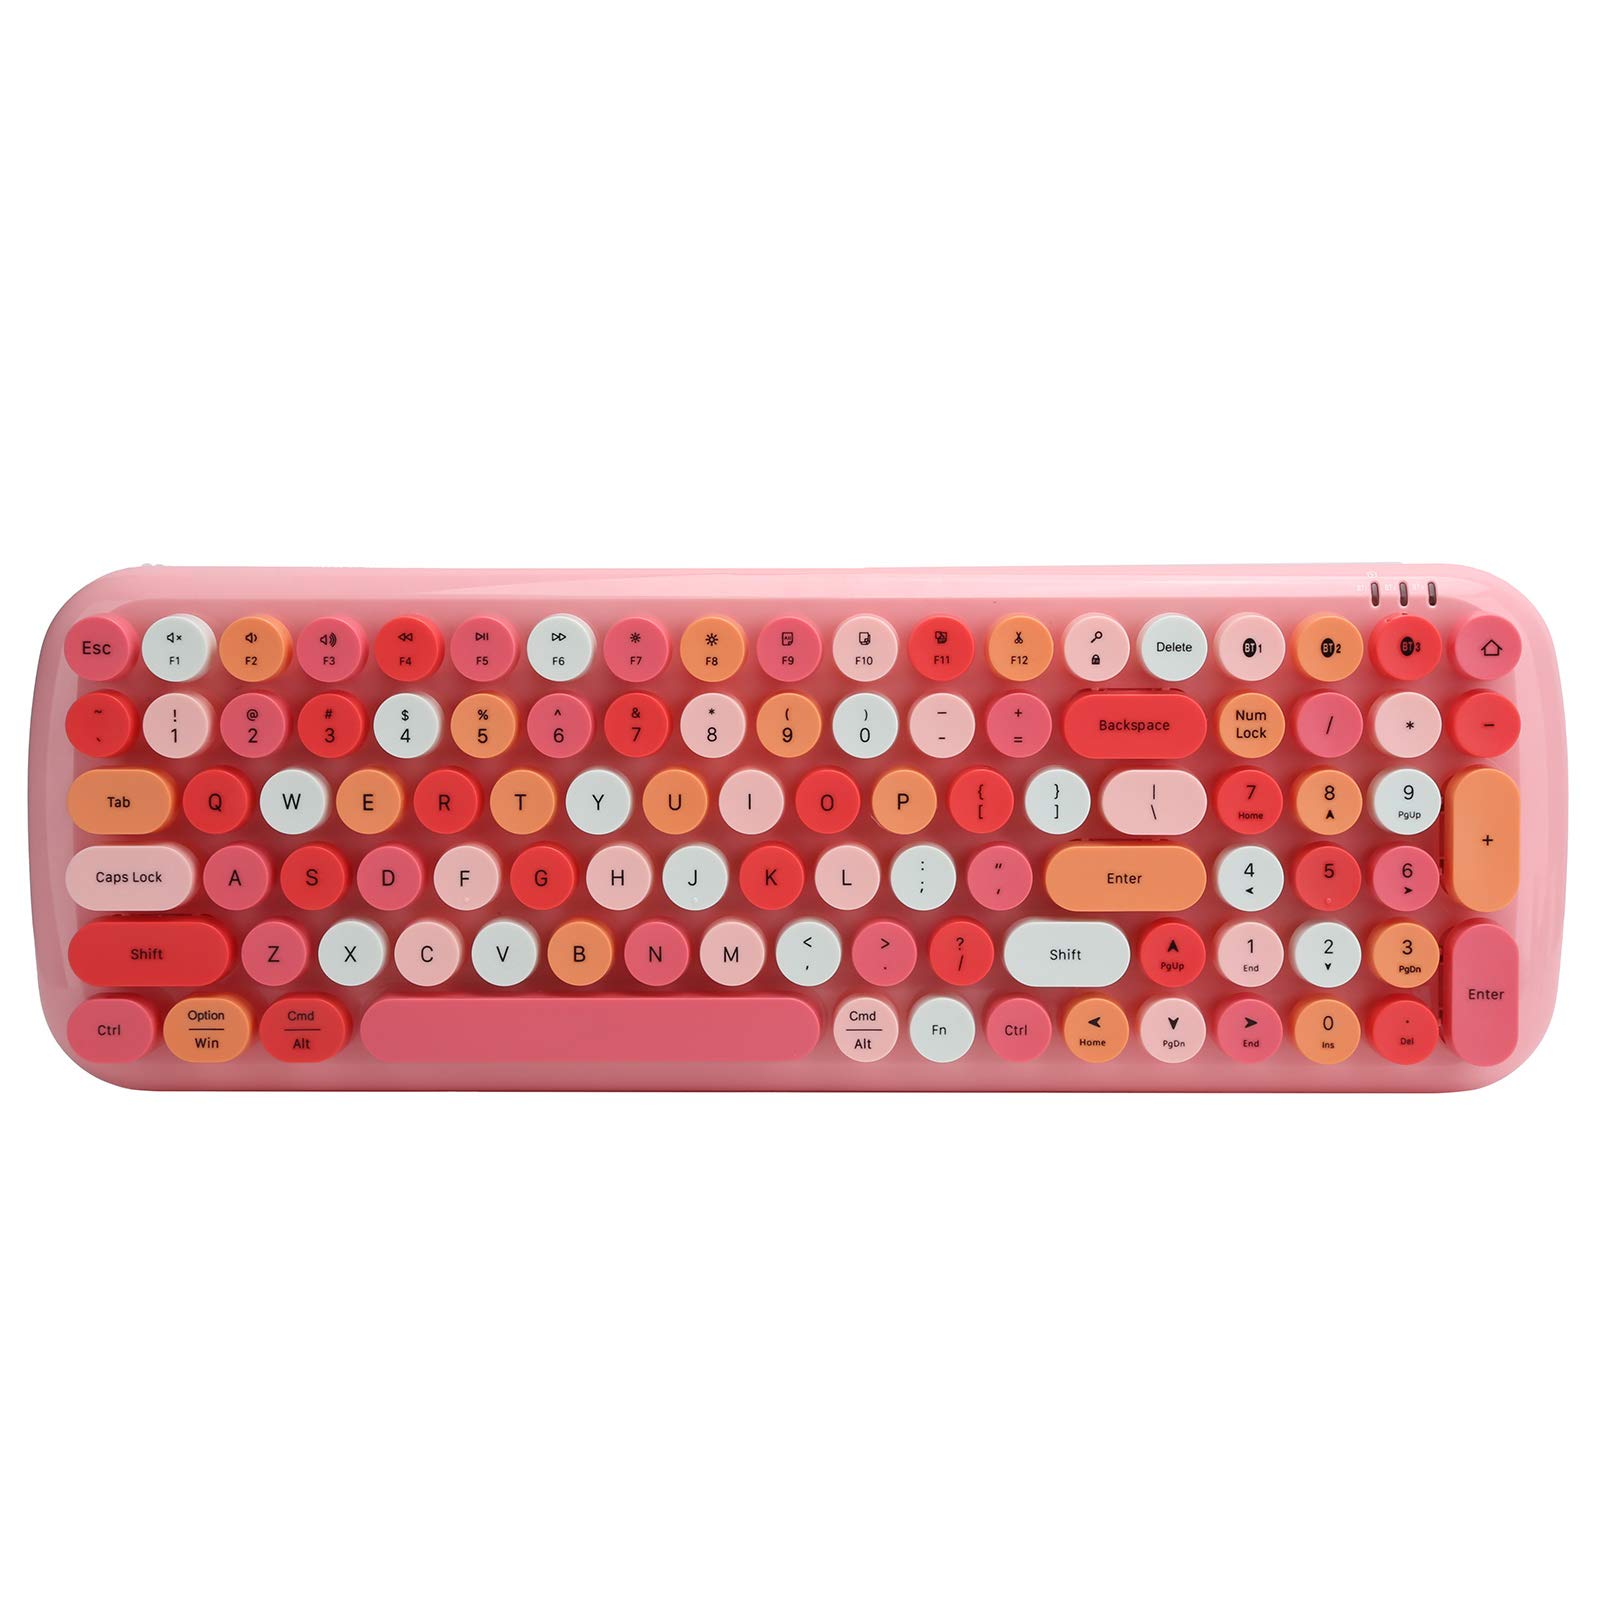 PUSOKEI Drahtlose Tastatur, Bluetooth 5.1 Ergonomische Tastatur mit Runden Retro-Tastaturkappen, 100 Tasten, für Windows/OS X/Android/IOS, für PC/Notebook/Tablet/Mobiltelefon((Rosa Mischfarbe))